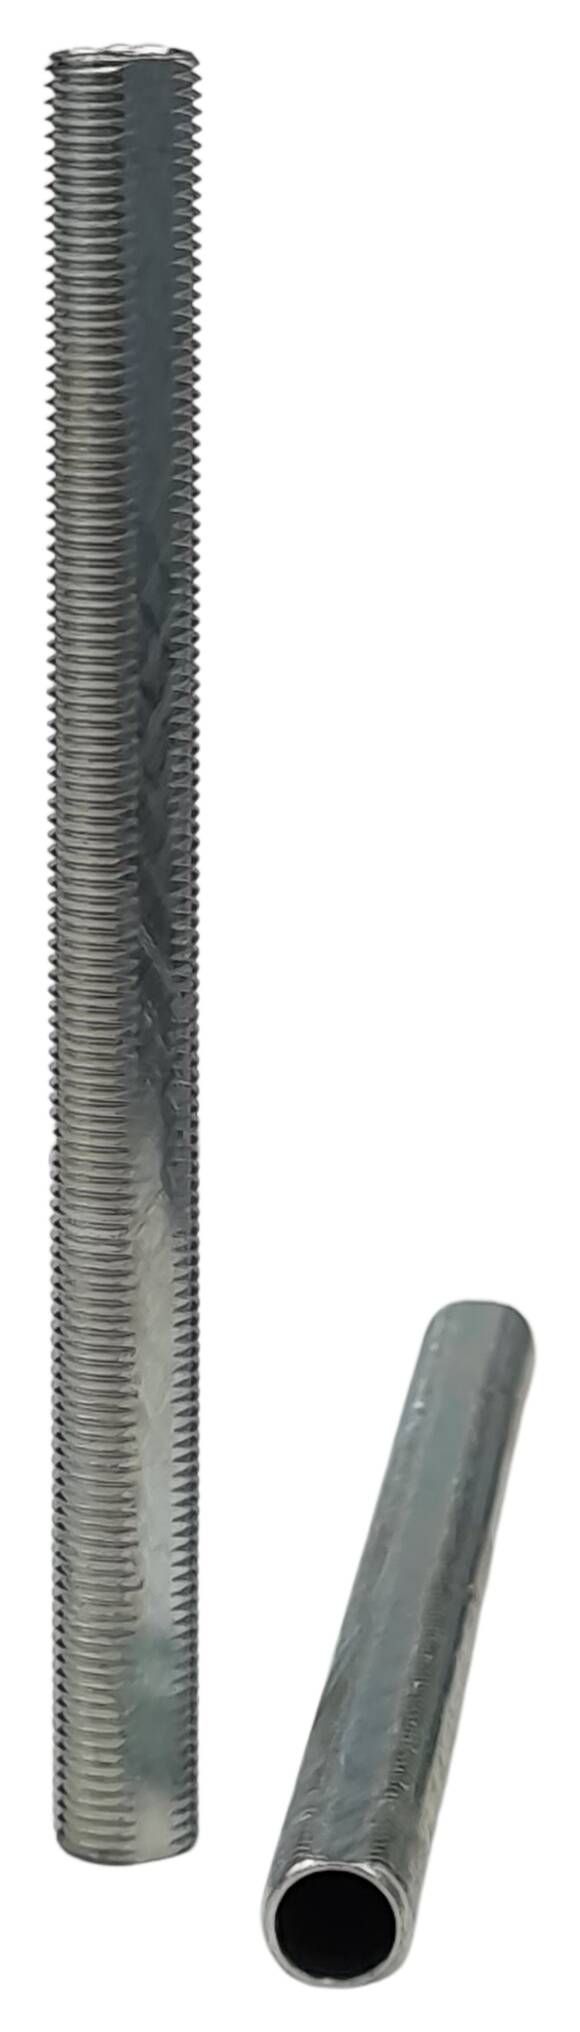 iron thread tube M10x1x115 profil zinc